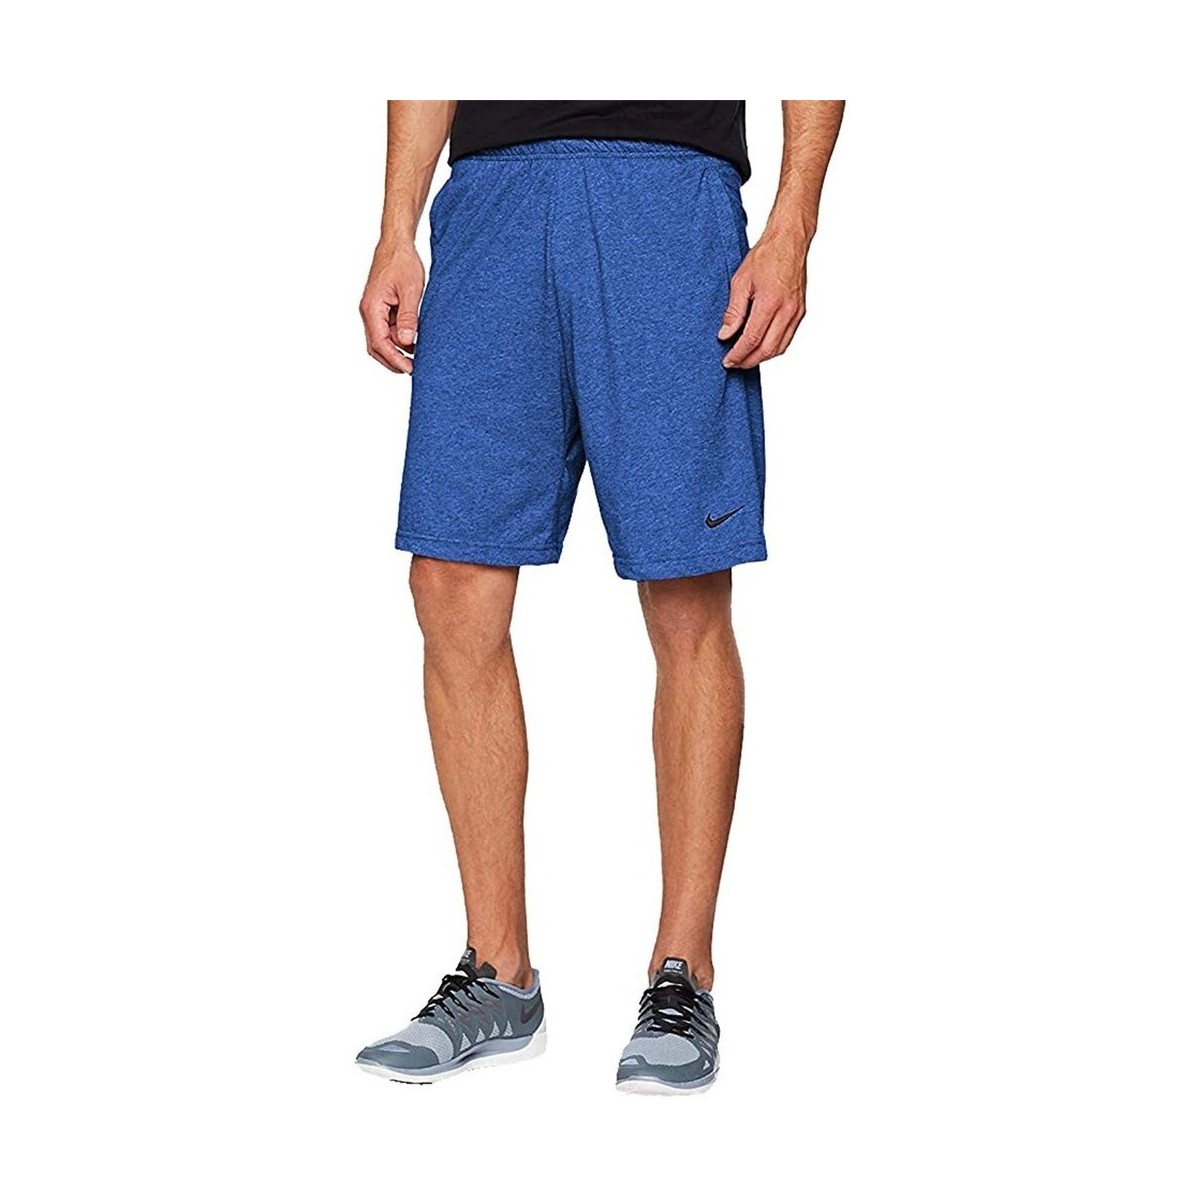 Îmbracaminte Bărbați Pantaloni trei sferturi Nike Pro Drifit Flex albastru